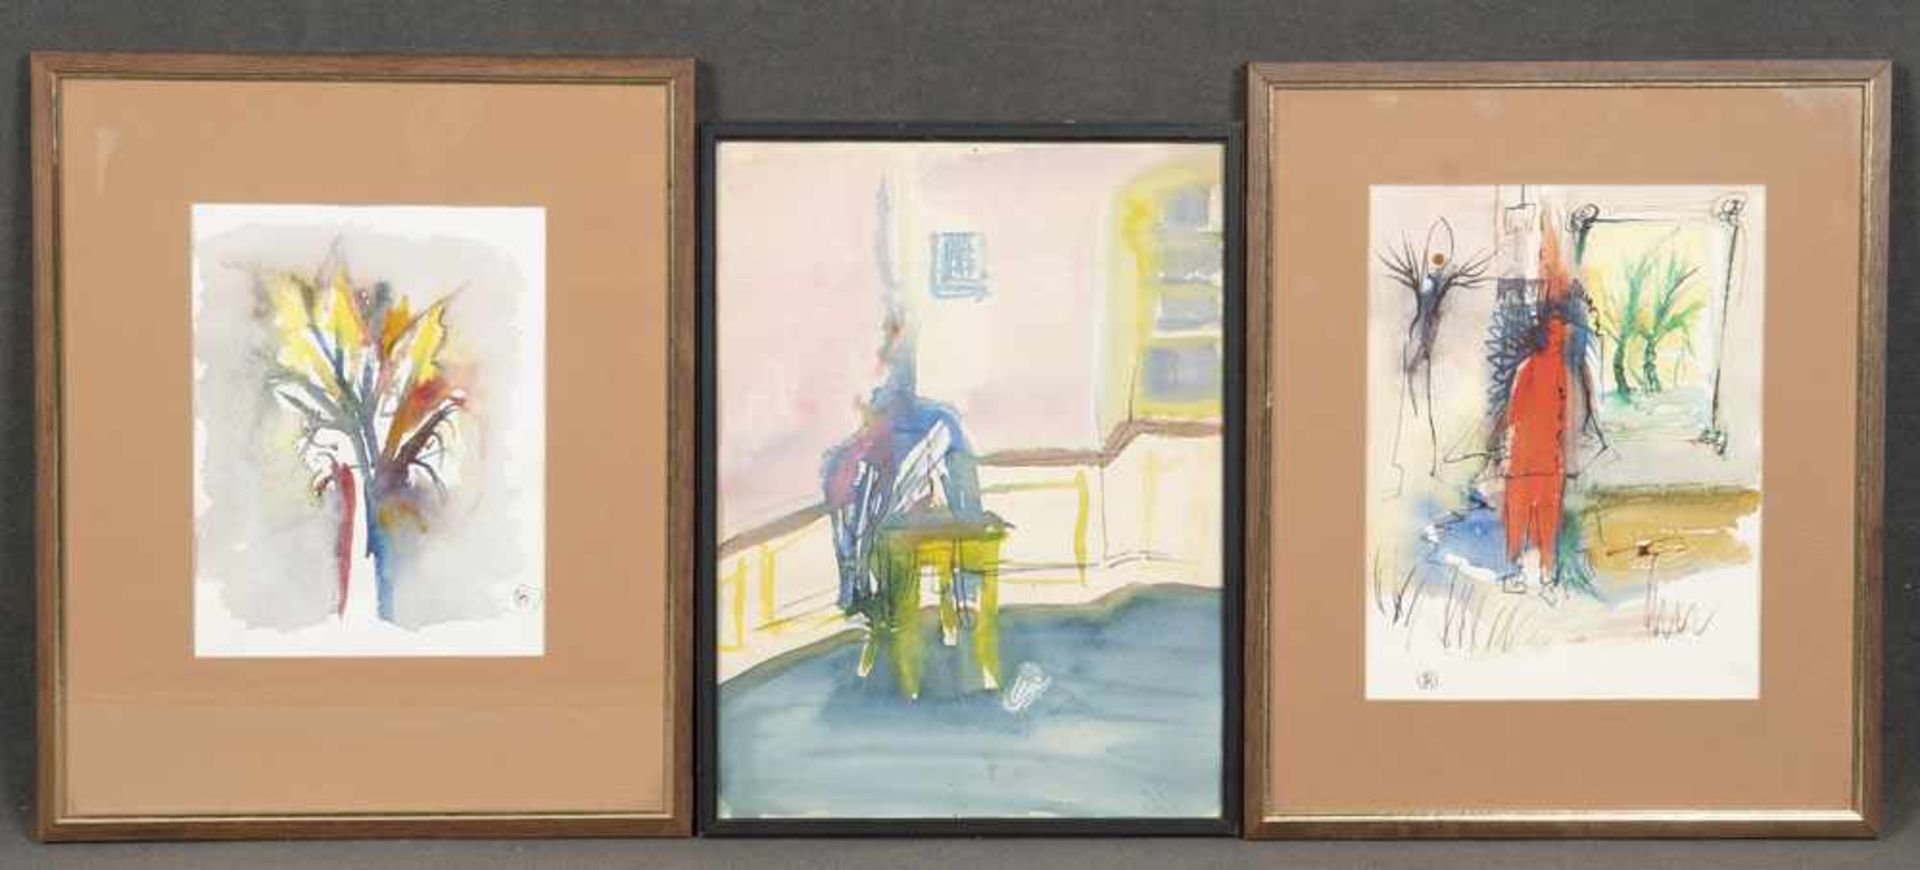 Rudi Scholz (Maler des 20. Jhs.). Interieur und zwei abstrahierte Kompositionen. Drei Aquarelle/